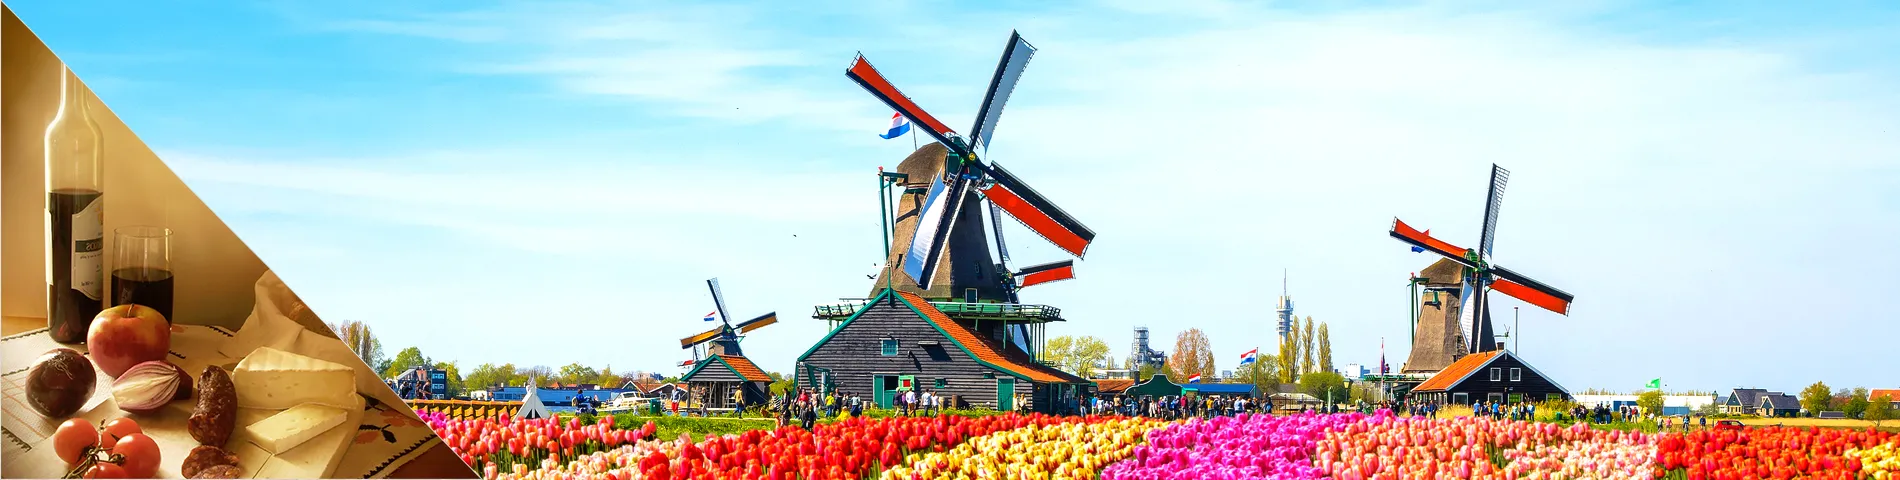 Nederland - Nederlands & cultuur